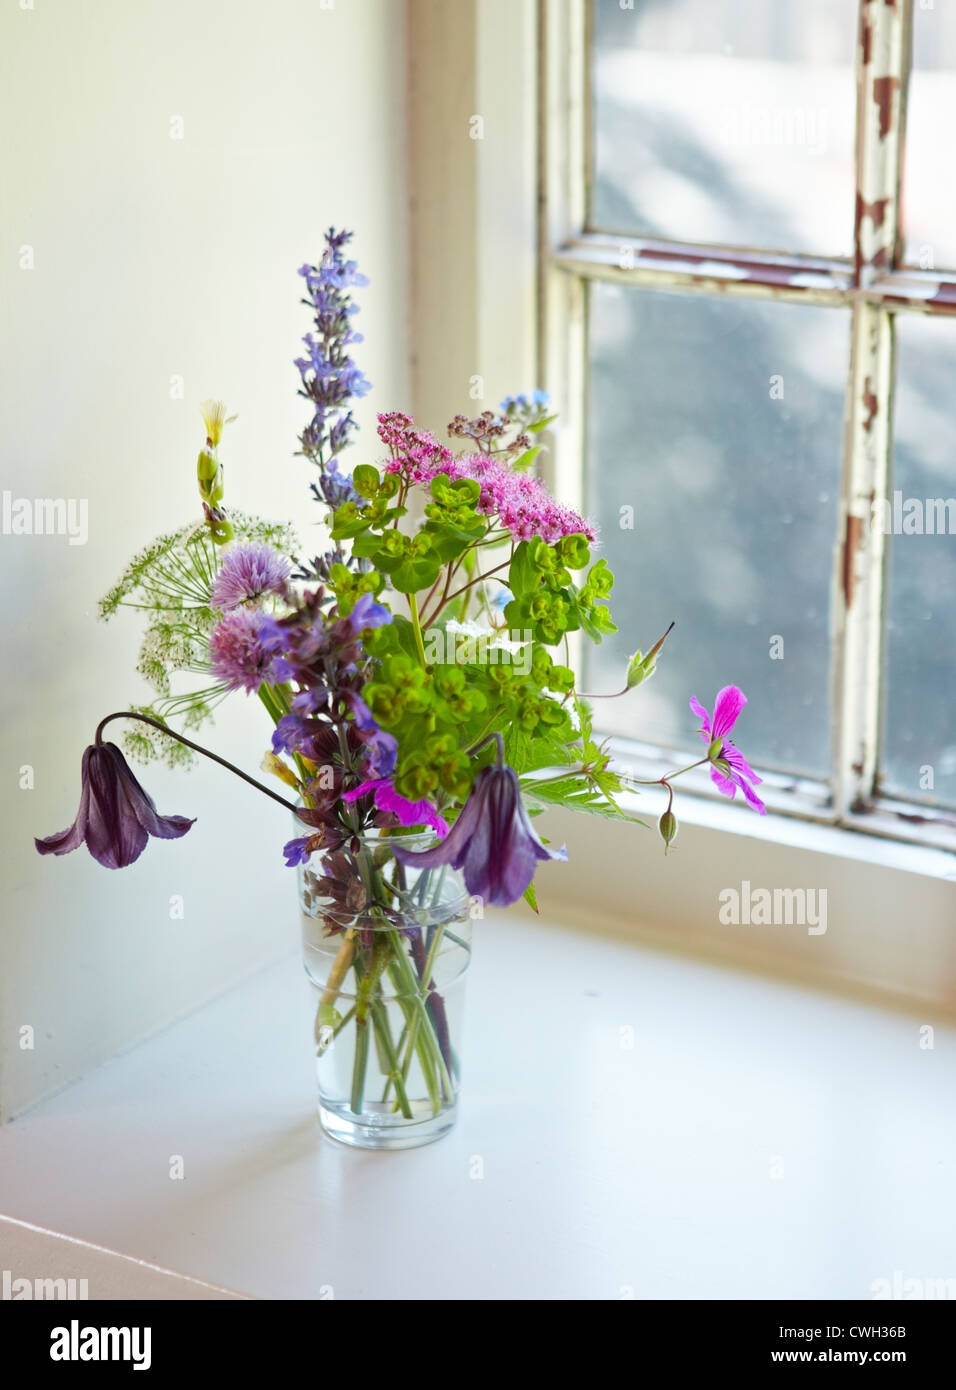 La Jolie fleurs sauvages dans un petit vase en verre blanc sur un rebord de fenêtre. Banque D'Images